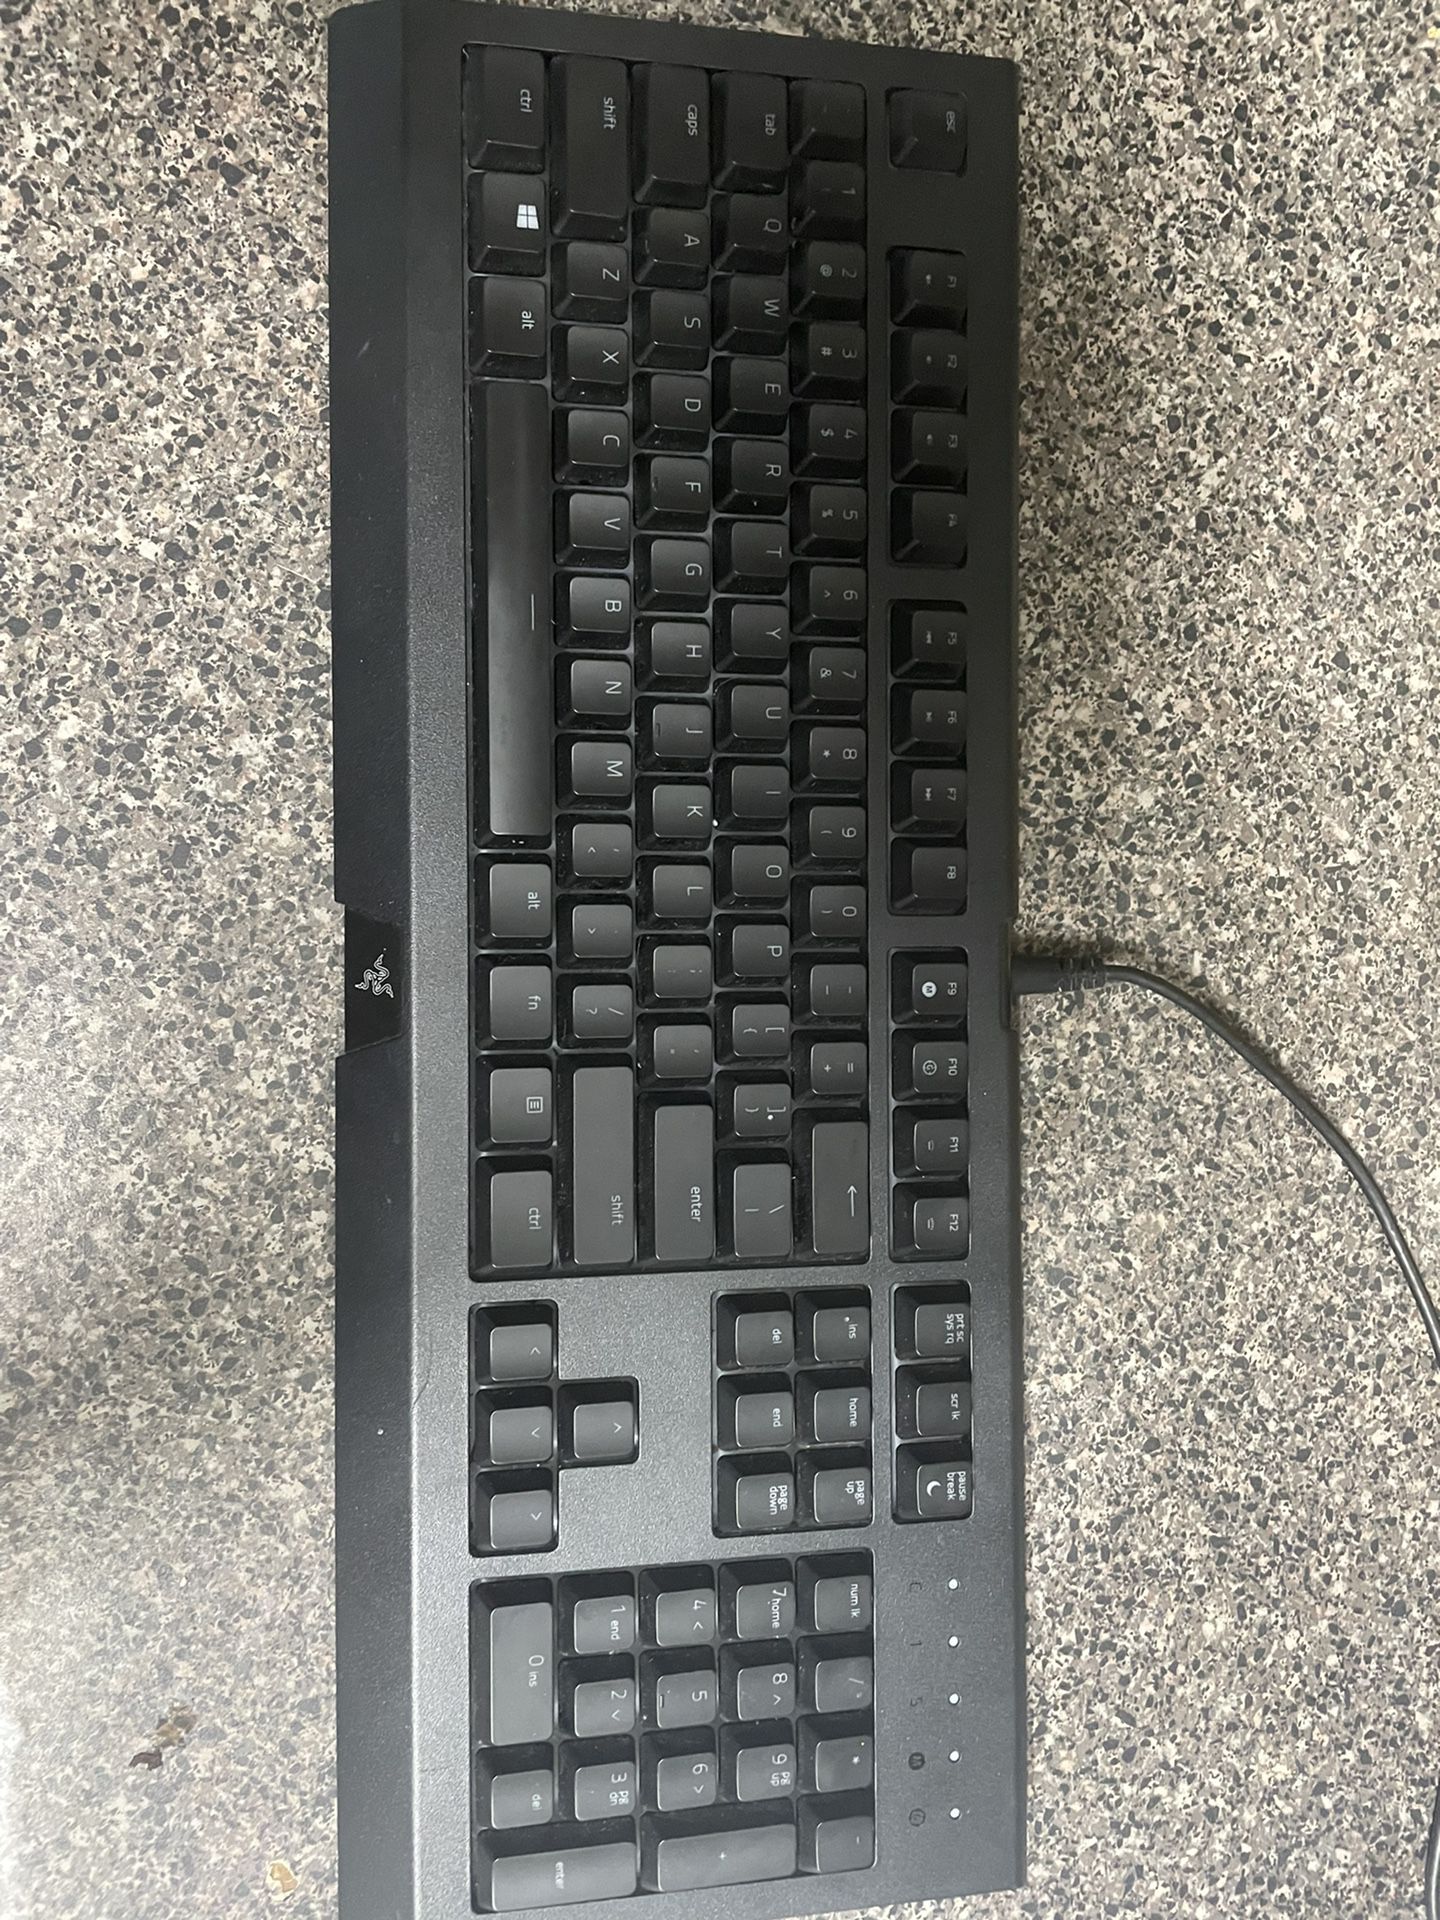 Razer Cynosa Chroma RGB Keyboard